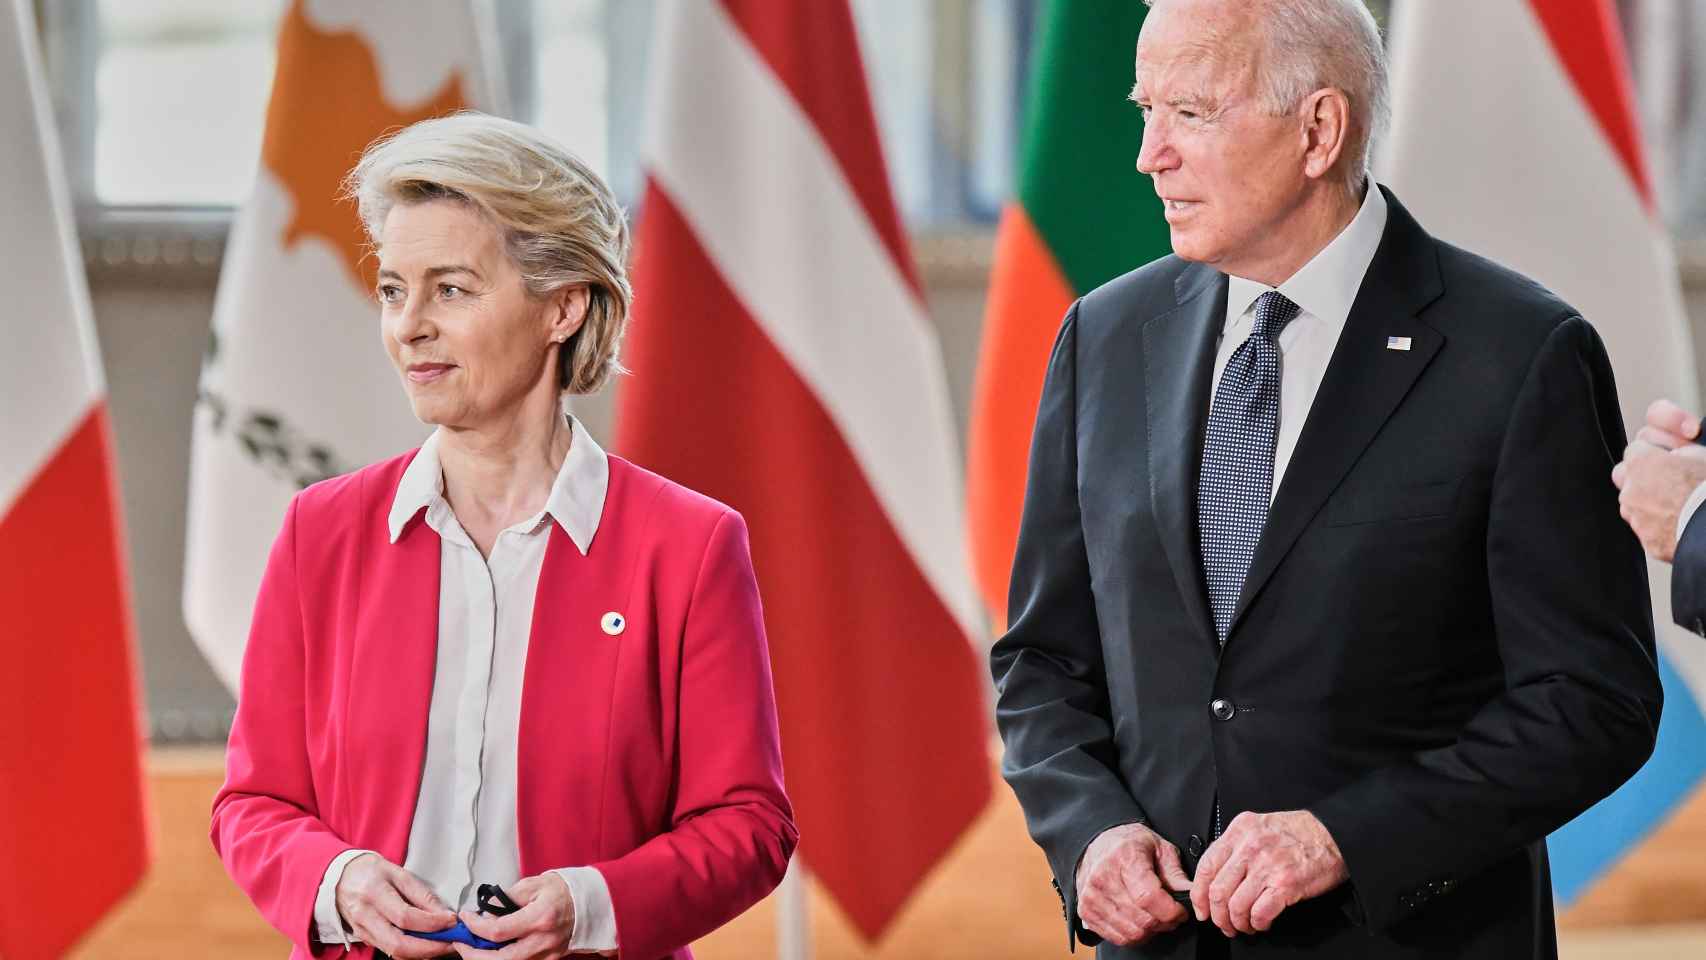 La presidenta de la Comisión Europea, Ursula von der Leyen, y el presidente de los Estados Unidos, Joe Biden, durante su reunión en Bruselas en junio de 2021.